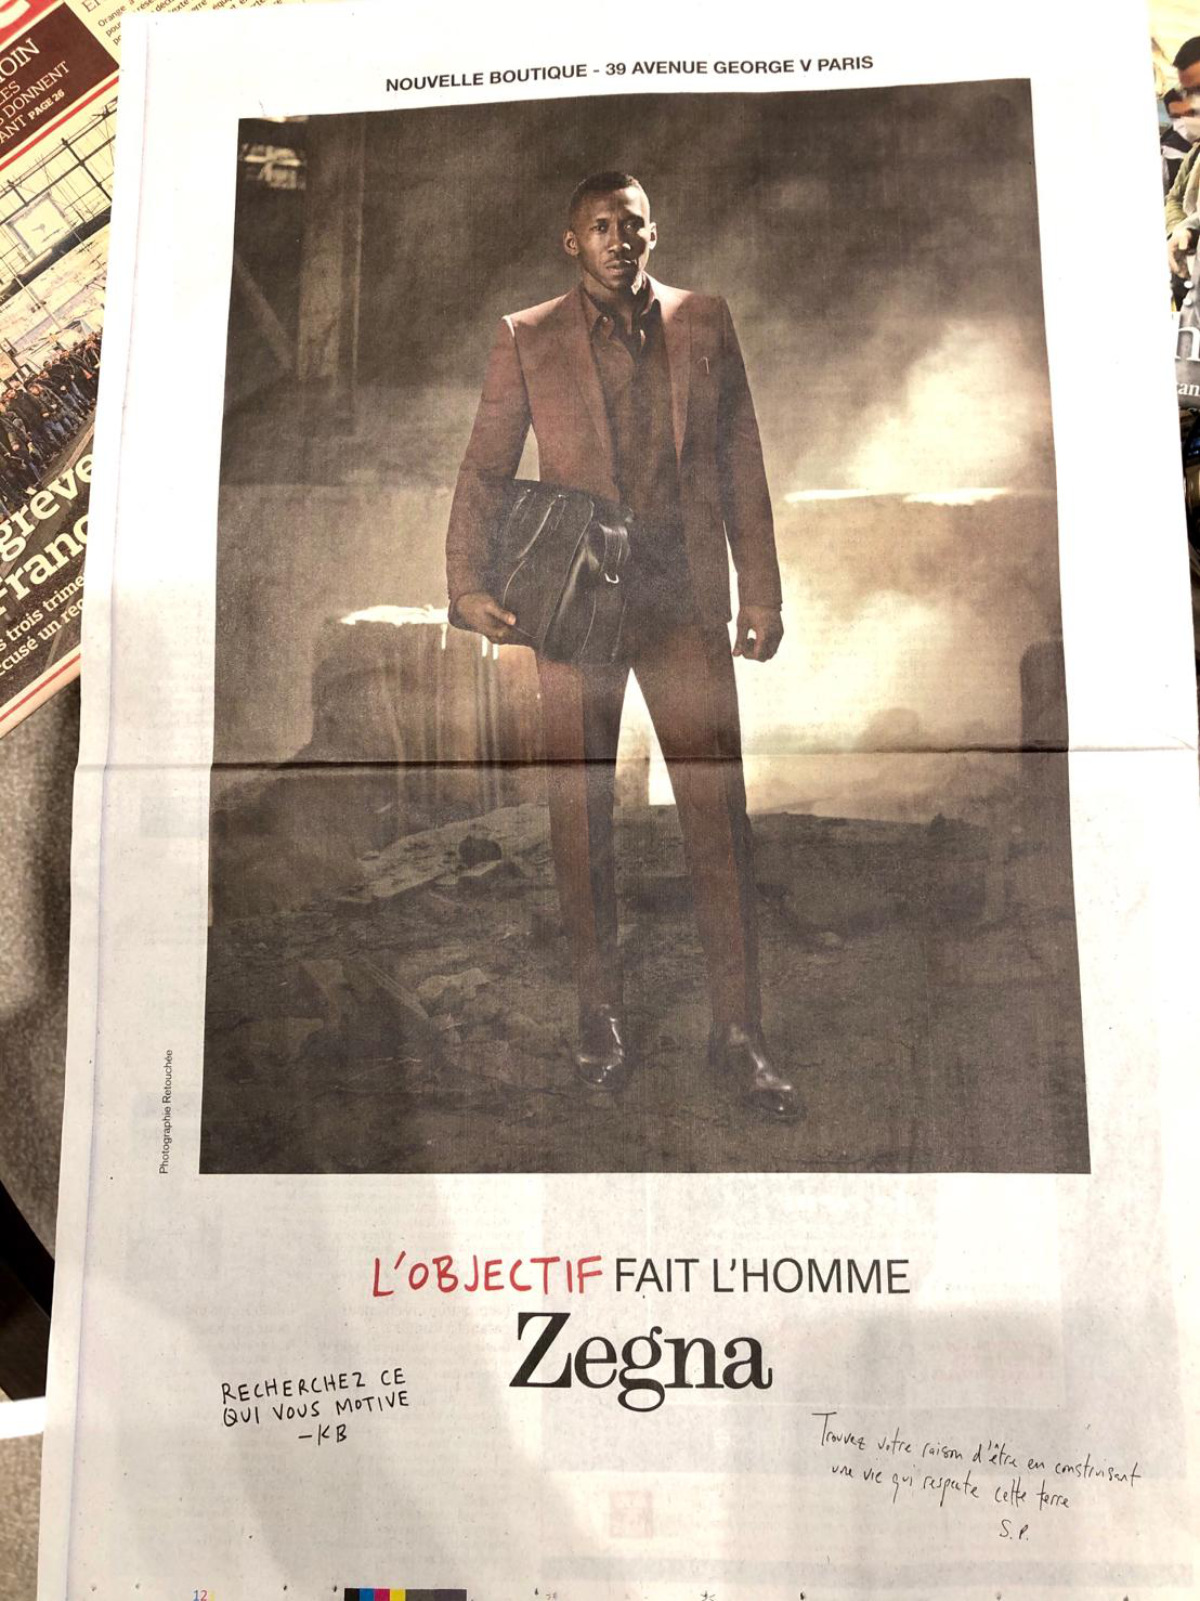 New Ermenegildo Zegna boutique in Paris